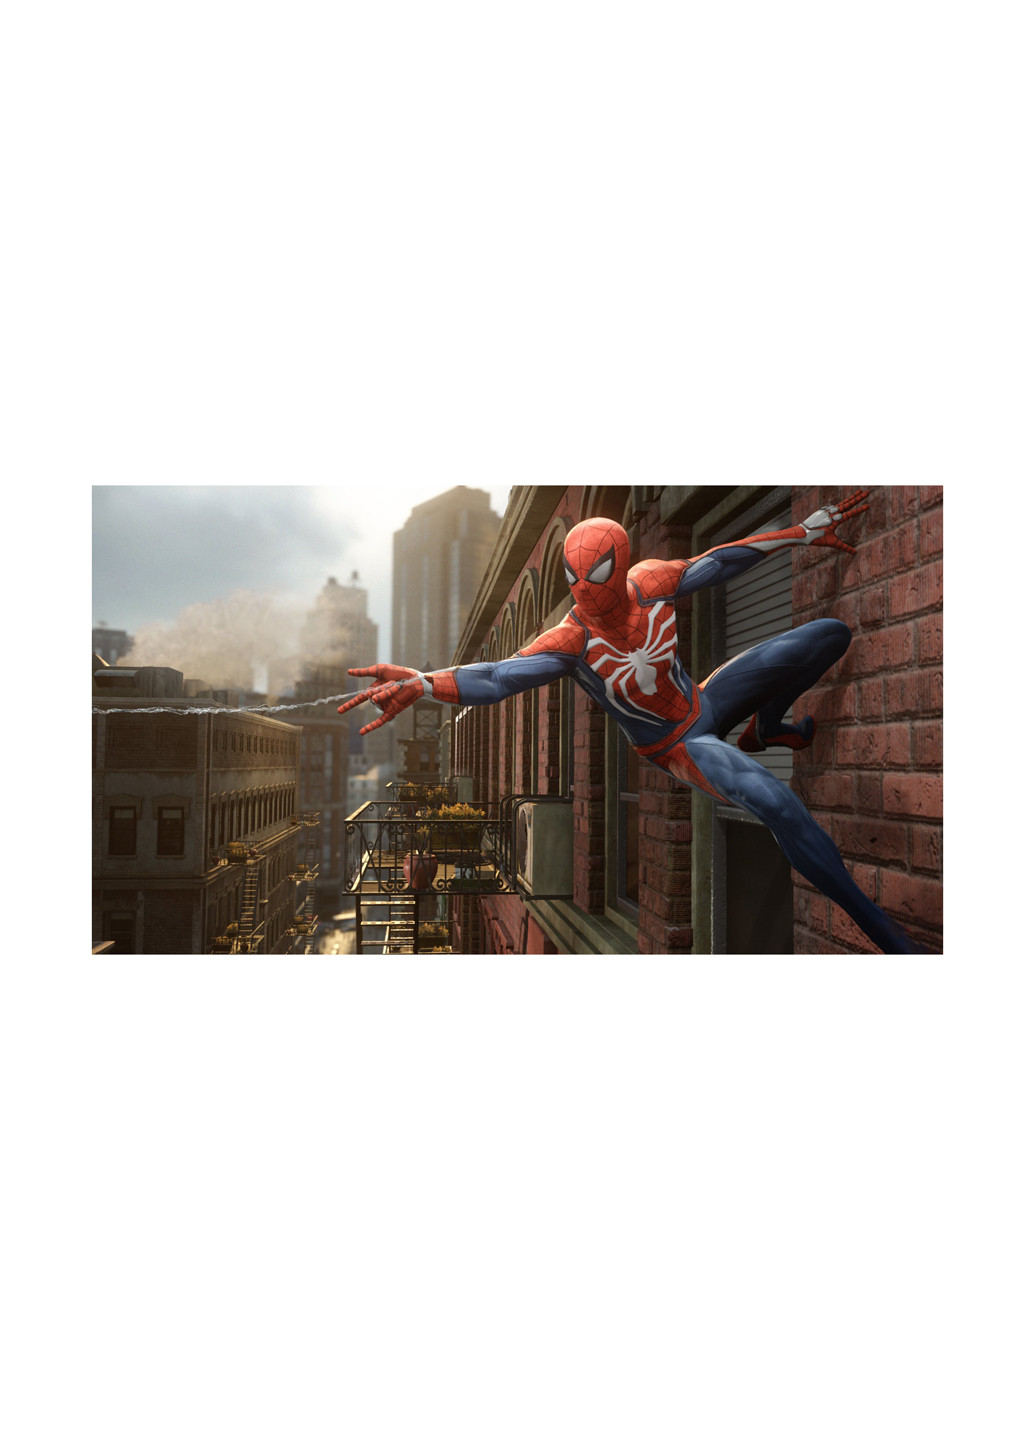 Гра PS4 Marvel Spider-Man. Видання «Гра року» [Blu-Ray диск] Games Software игра ps4 marvel spider-man. издание «игра года» [blu-ray диск] (150134272)